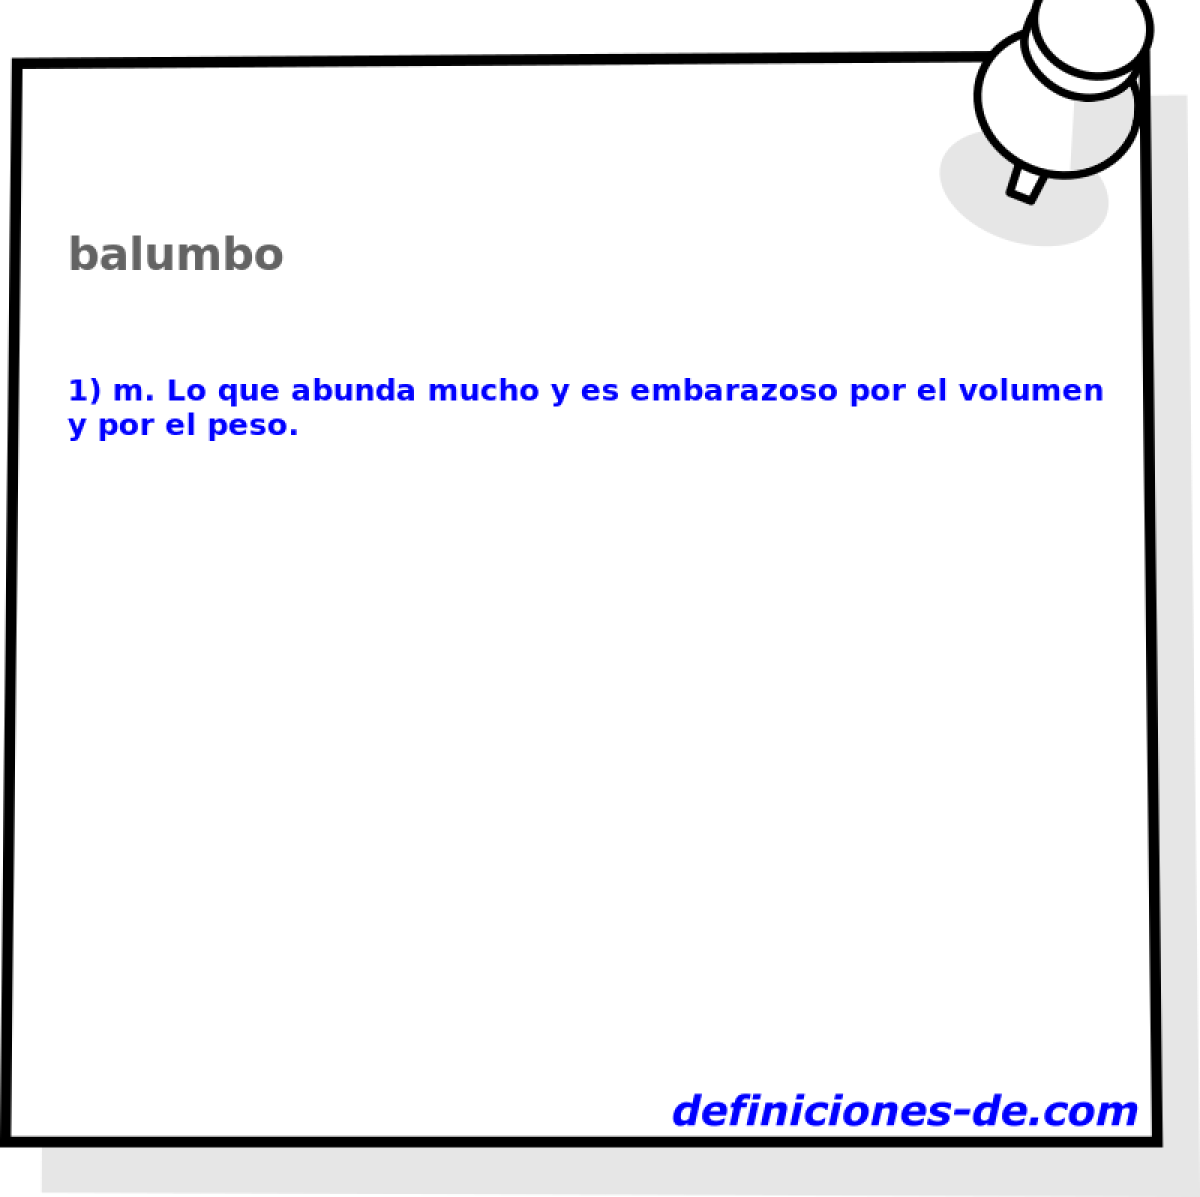 balumbo 